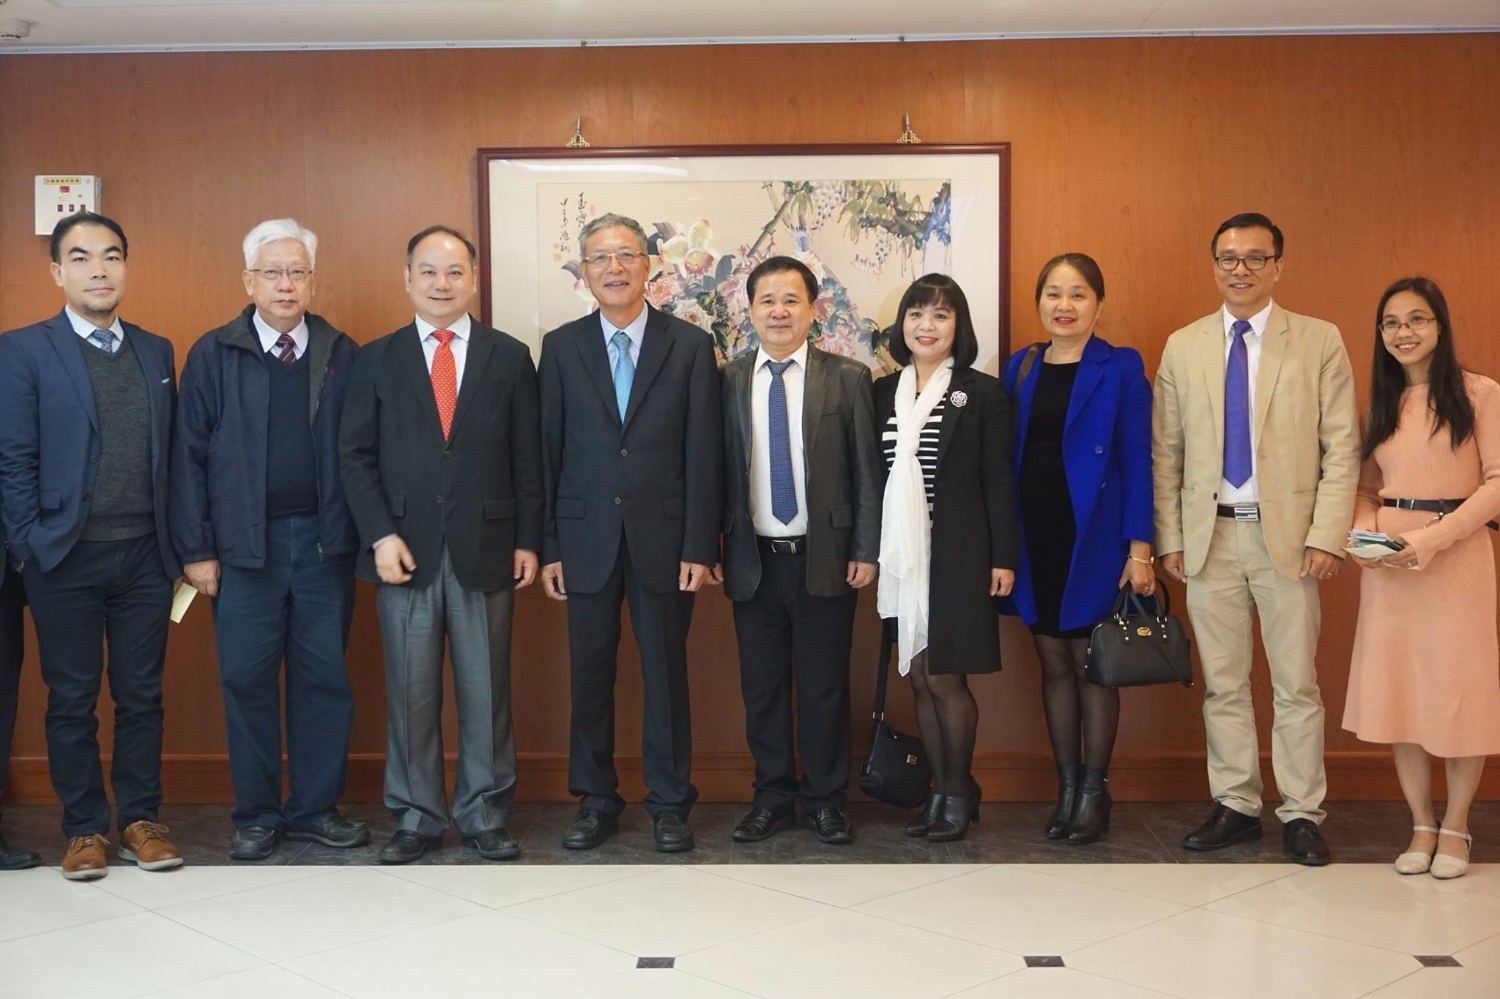 Đoàn công tác Trường đại học Thương mại thăm và ký hiệp định hợp tác với Đại học Long Hoa (Đài Loan)